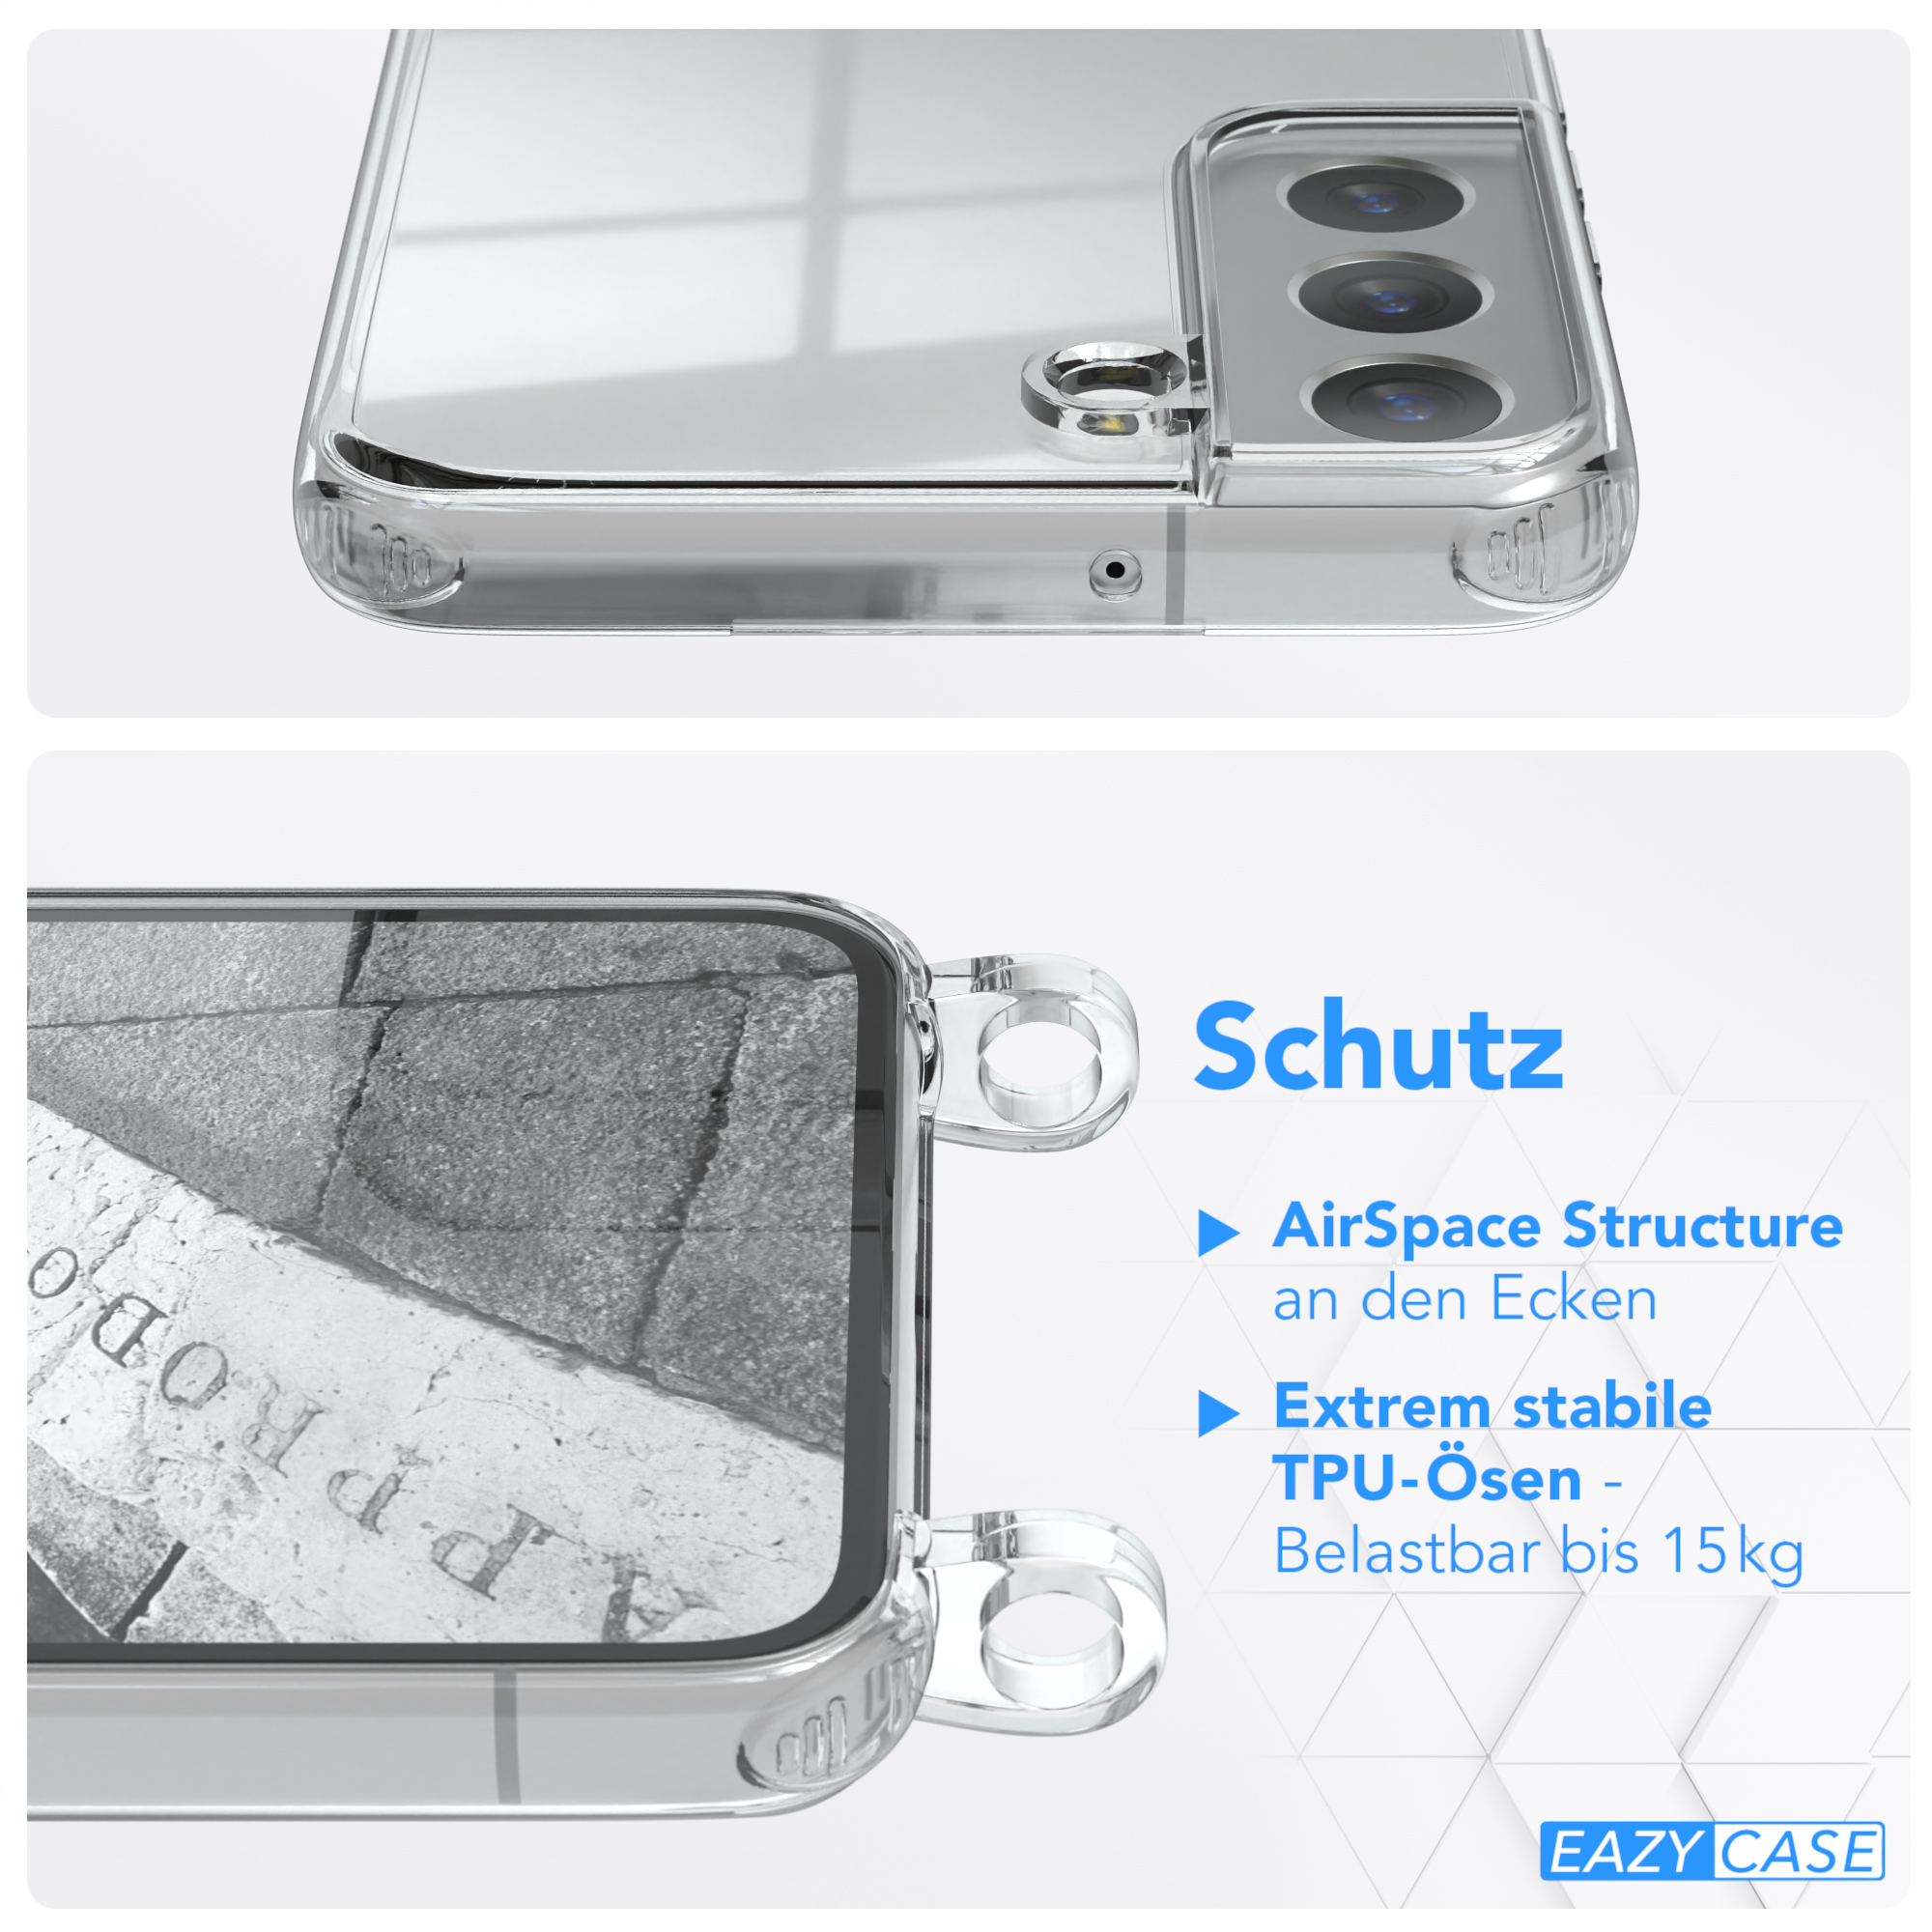 Silber mit 5G, Galaxy Umhängeband, Cover S22 / CASE EAZY Camouflage Clear Samsung, Clips Schwarz Umhängetasche,